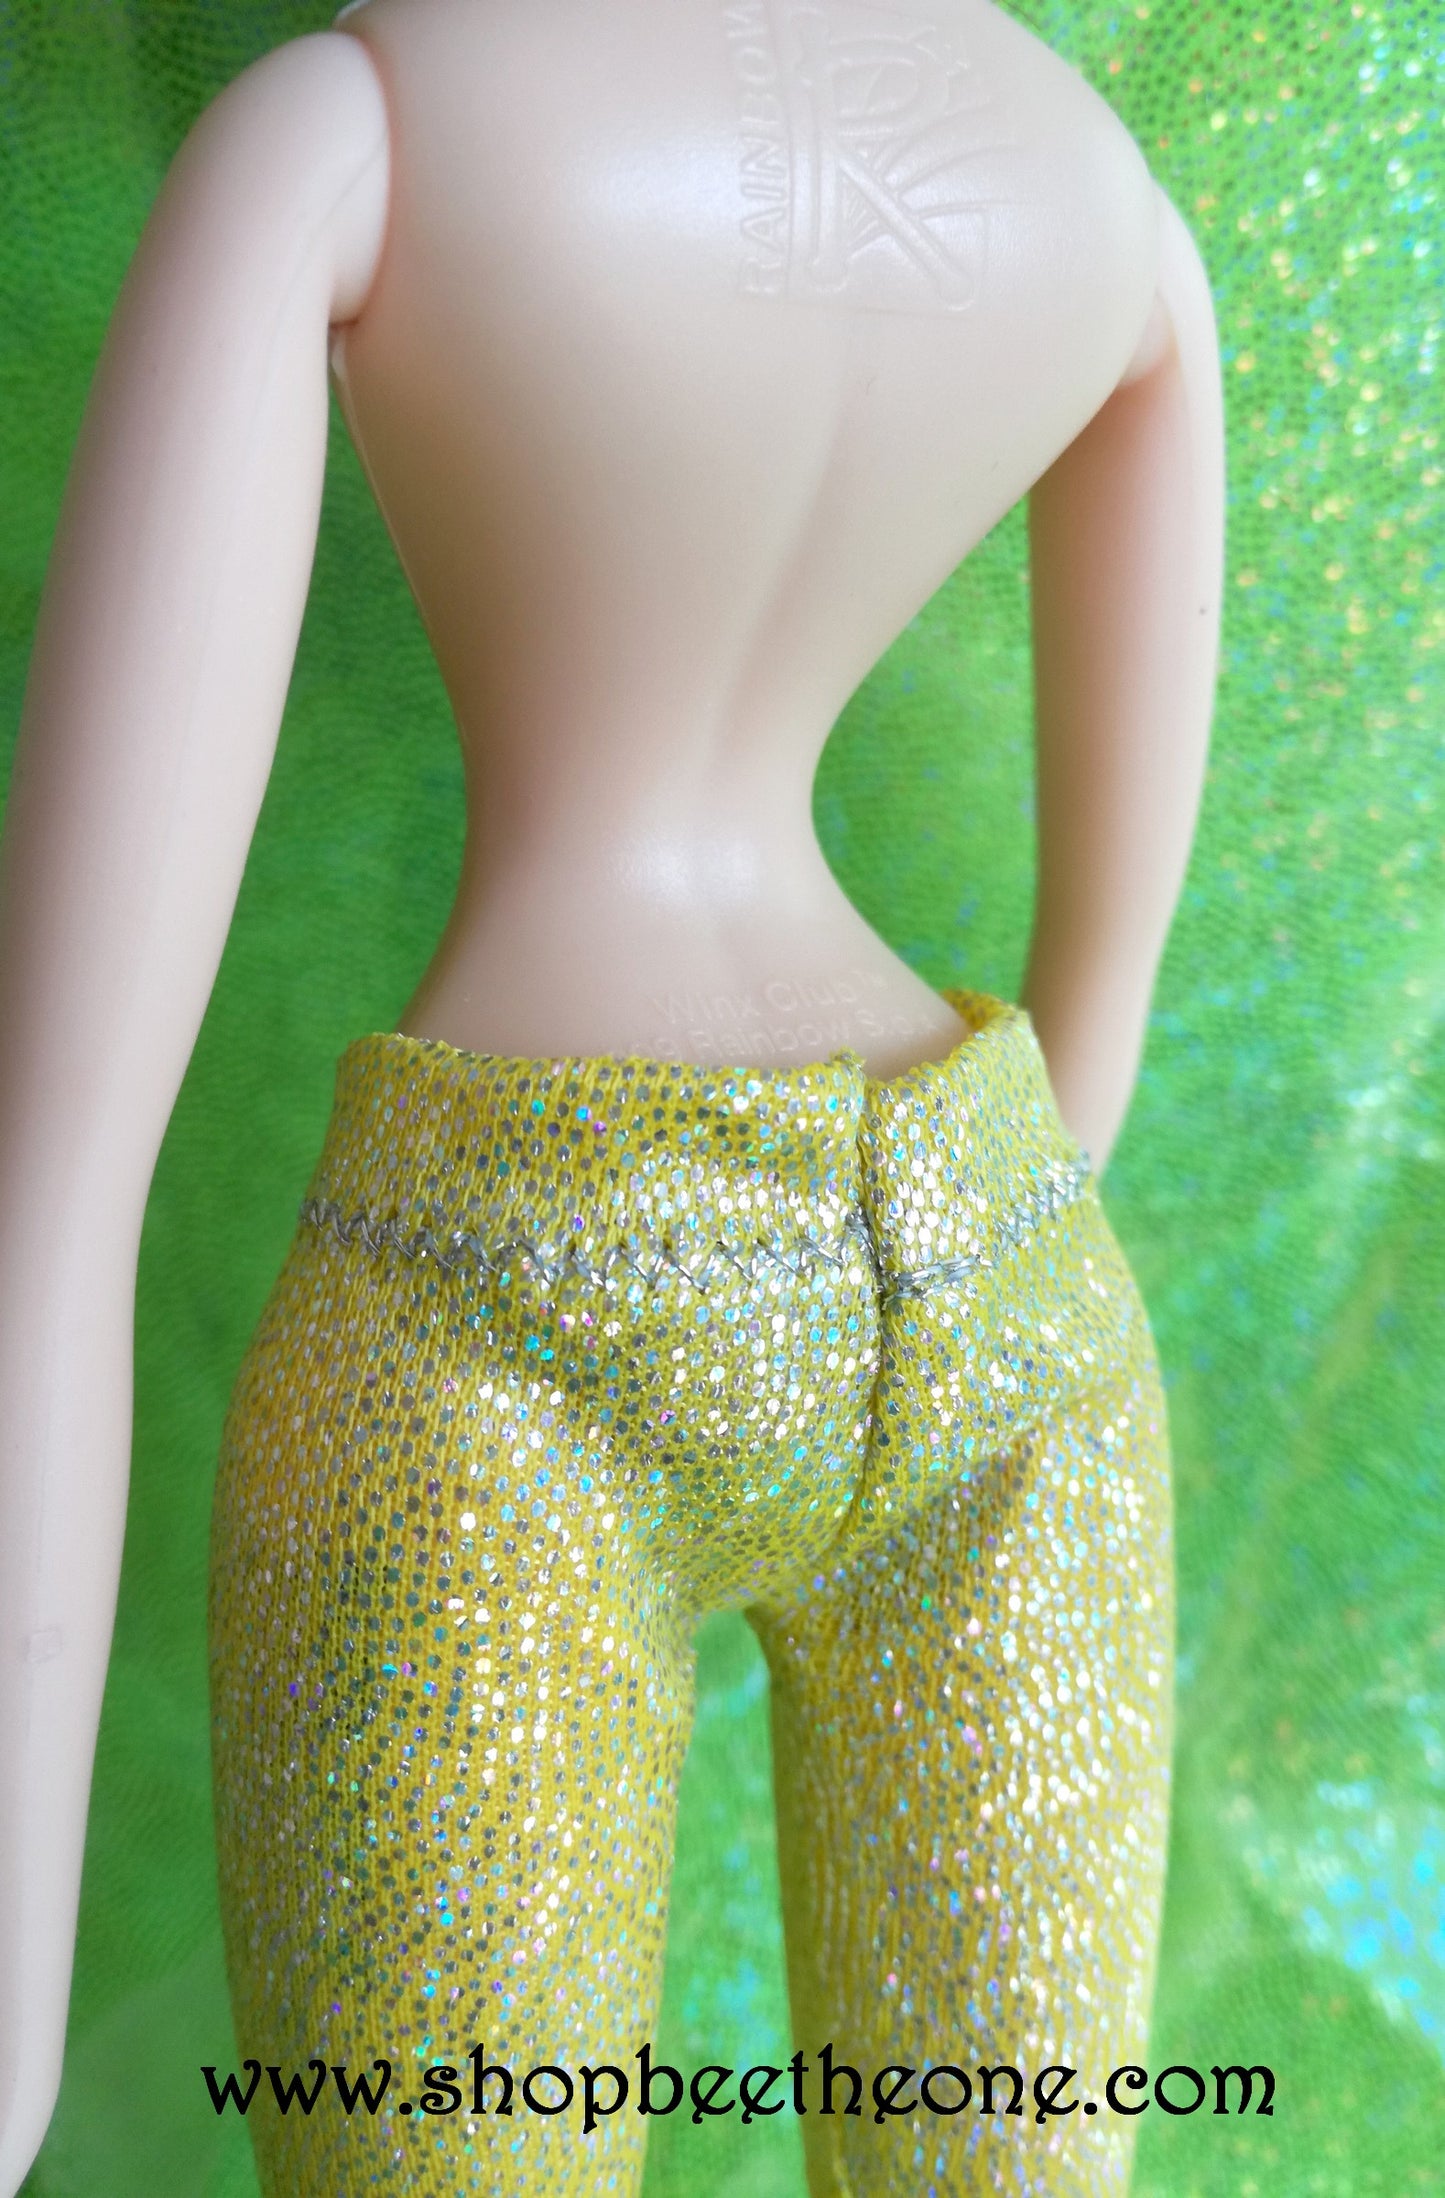 Pantalon collant leggings long imprimé holographique pour poupées Winx Club (Smoby, Giochi Preziosi/Jakks Pacific et Mattel) - 5 coloris - Collection Glitter Party - Marque Zambara